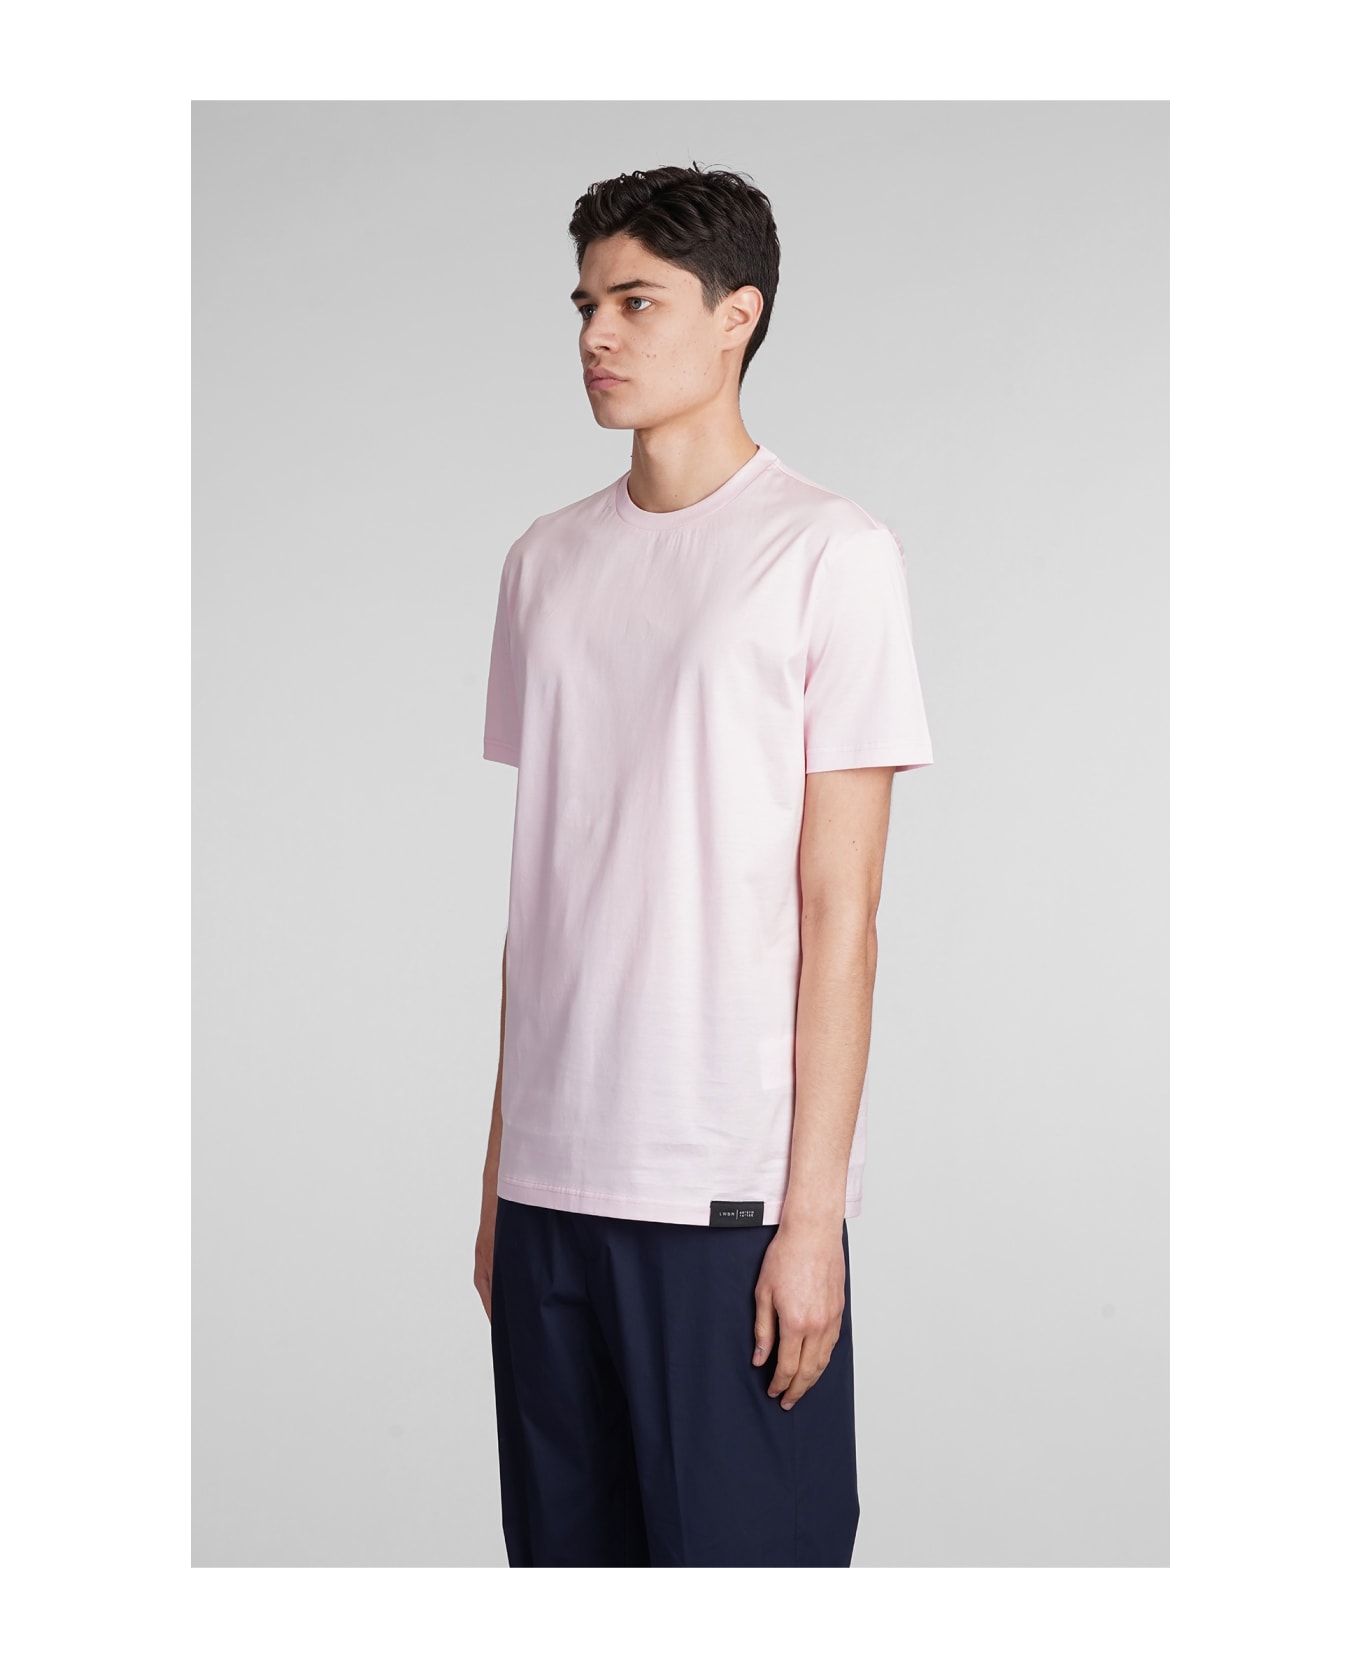 Low Brand B134 Basic T-shirt In Rose-pink Cotton - rose-pink シャツ